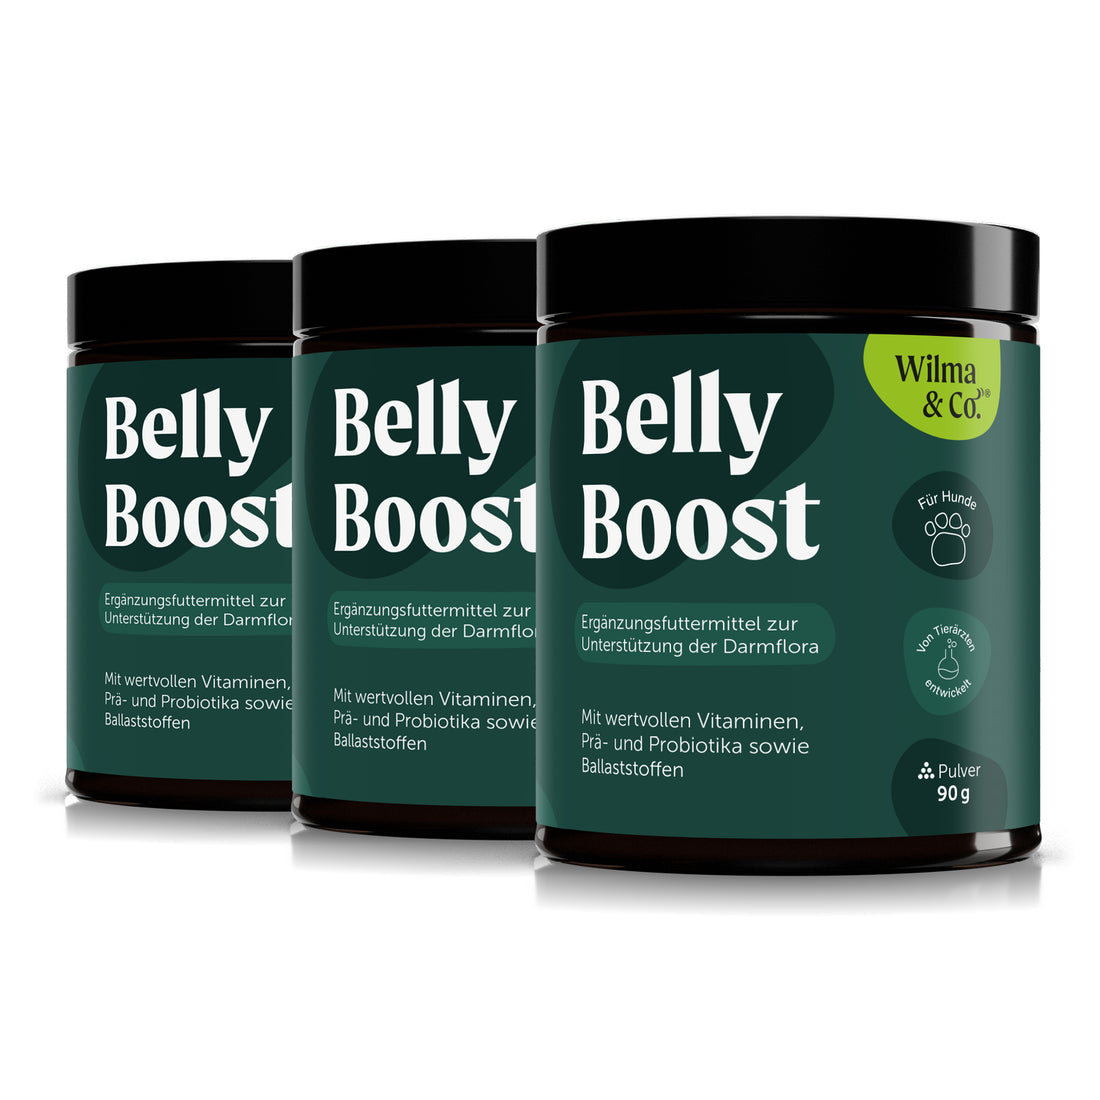 Belly Boost | Für ein besseres Wohlbefinden